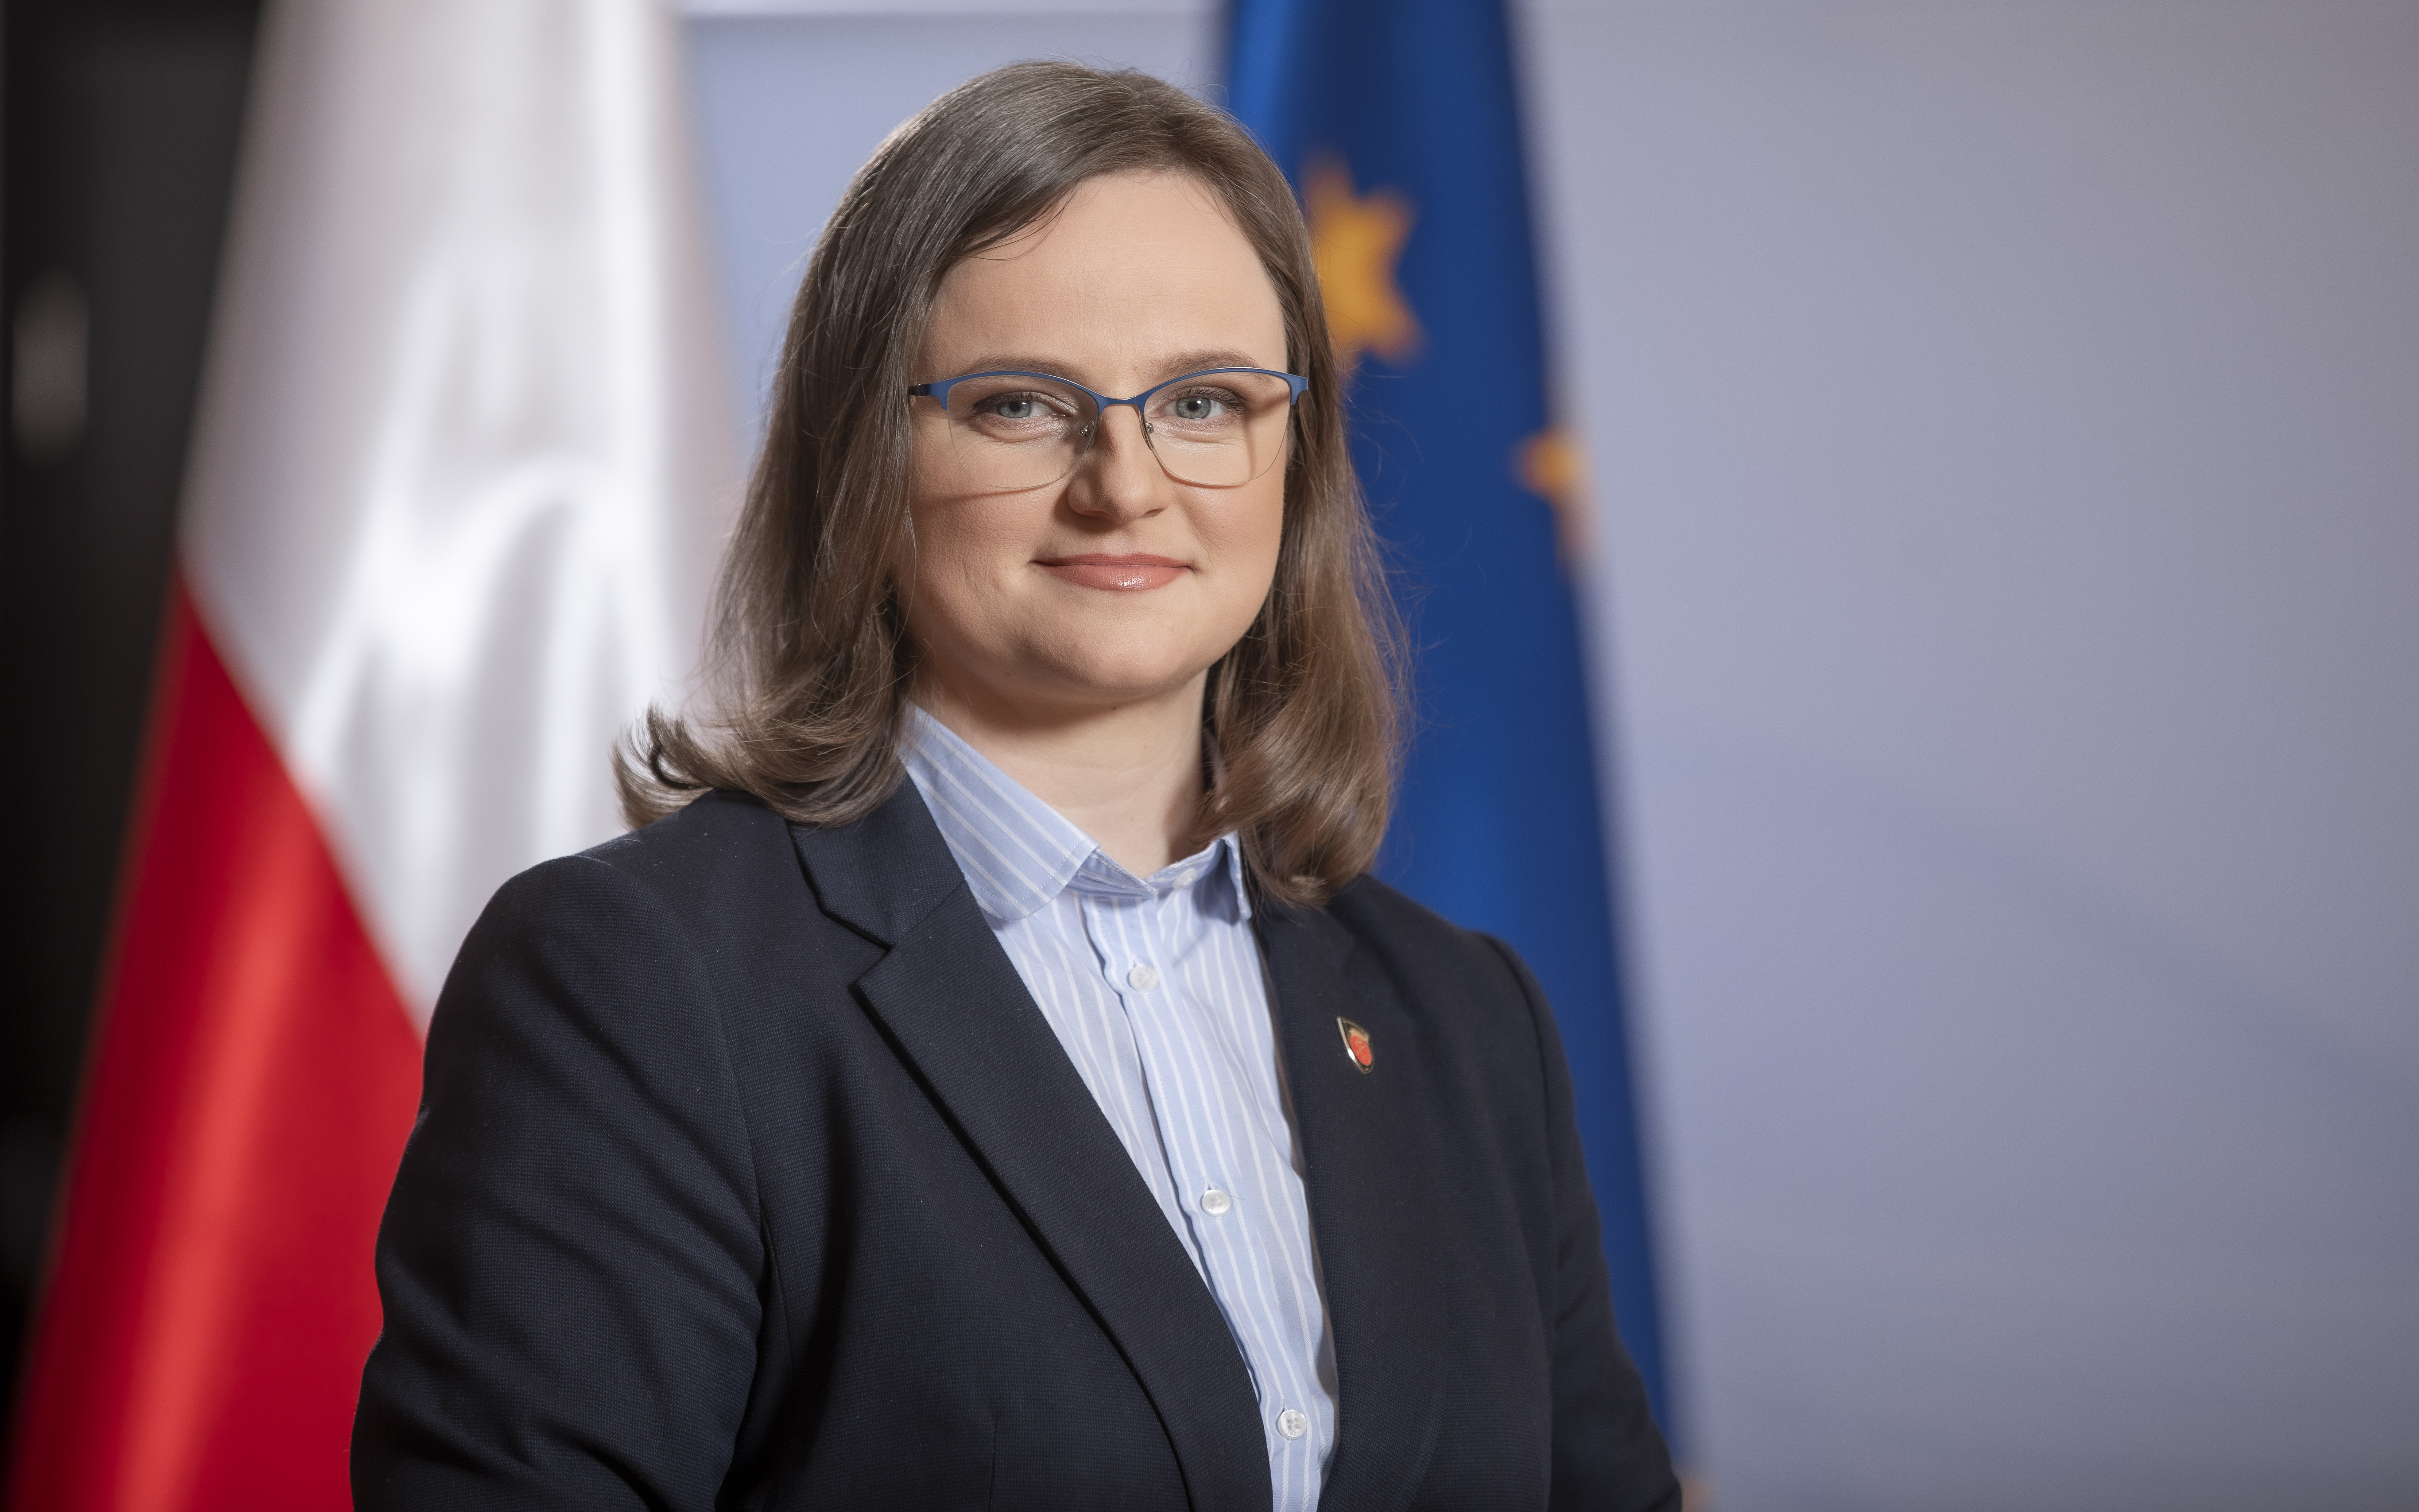 Anna Chałupa Podsekretarz Stanu, Zastępca Szefa Krajowej Administracji Skarbowej na tle flagi Polski i Unii Europejskiej